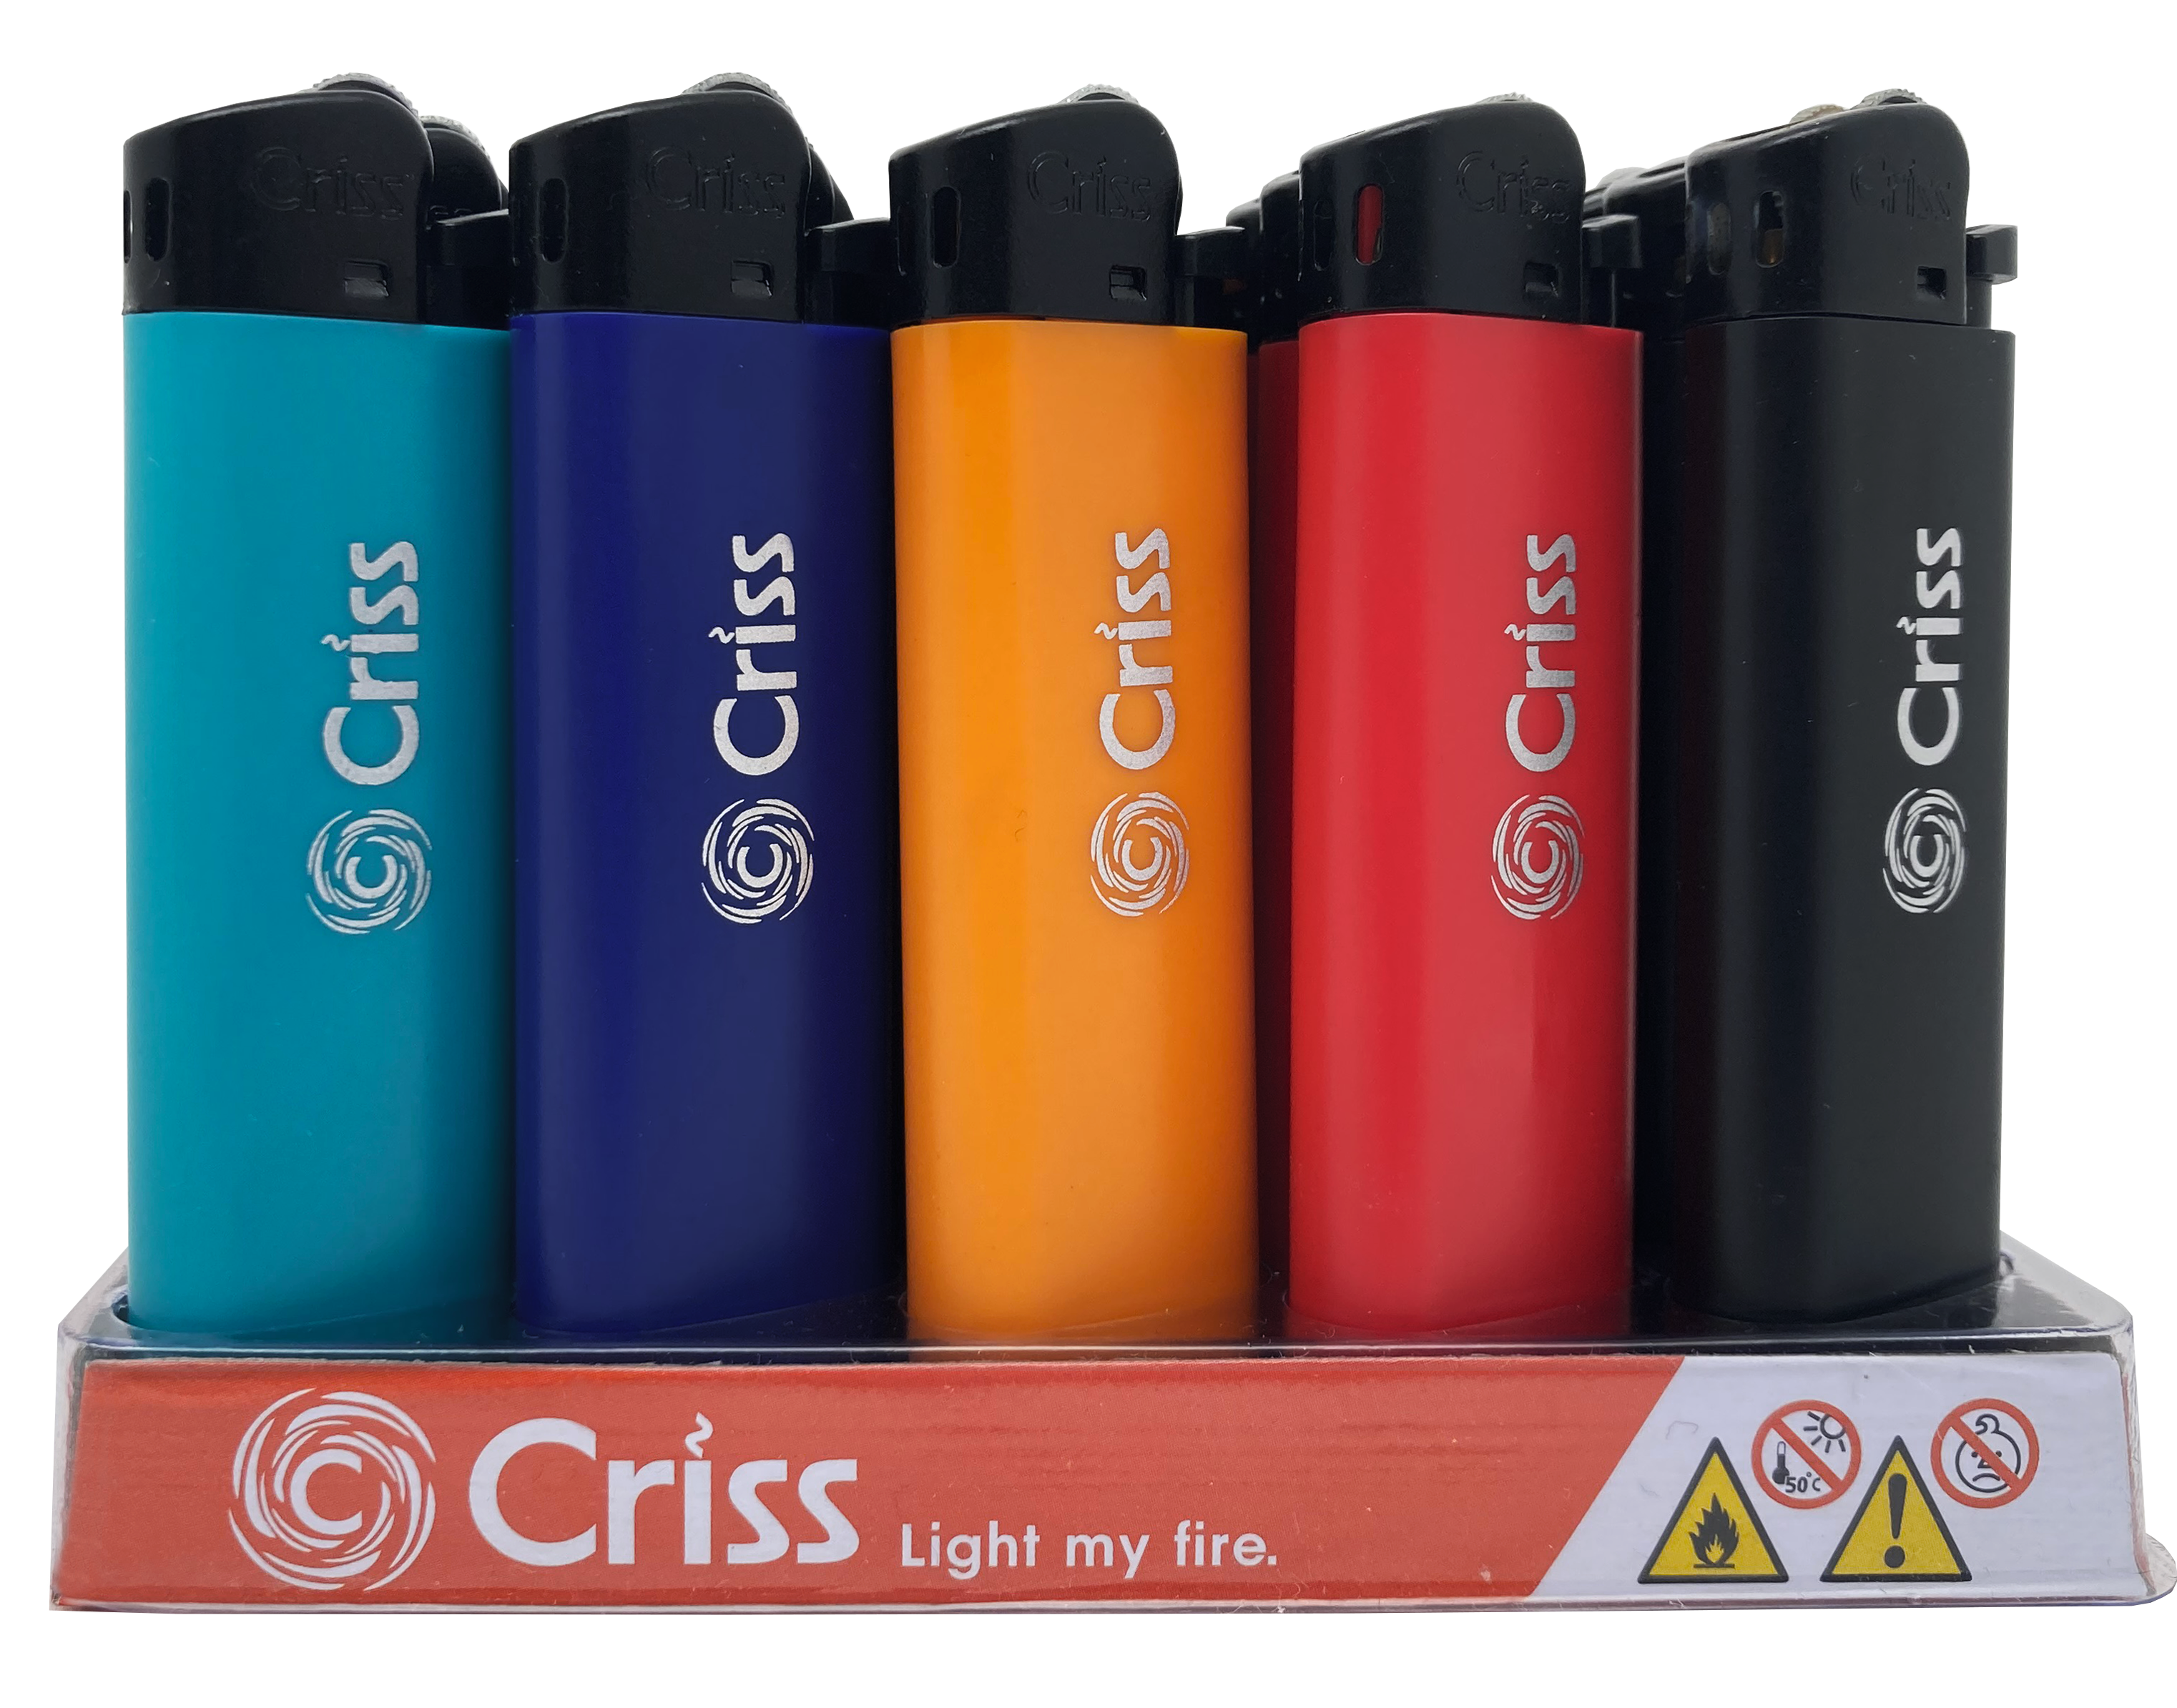 Одноразовые газовые зажигалки  торговой марки CRISS